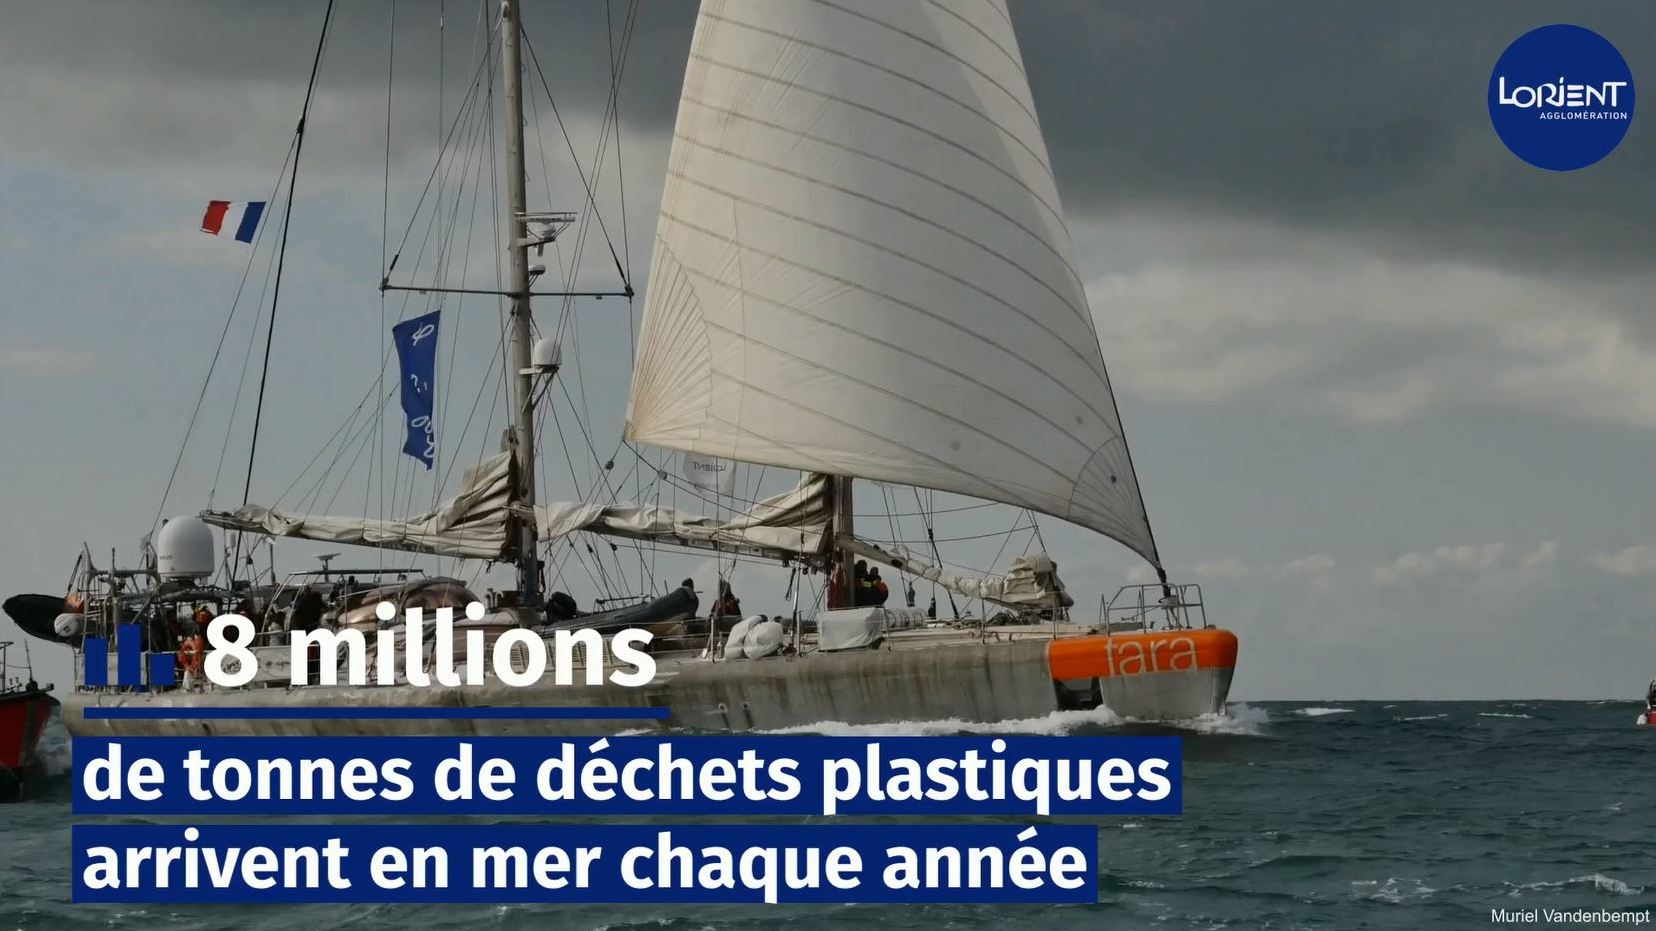 vignette vidéo Lorient Agglomération soutient la Fondation Tara Océan